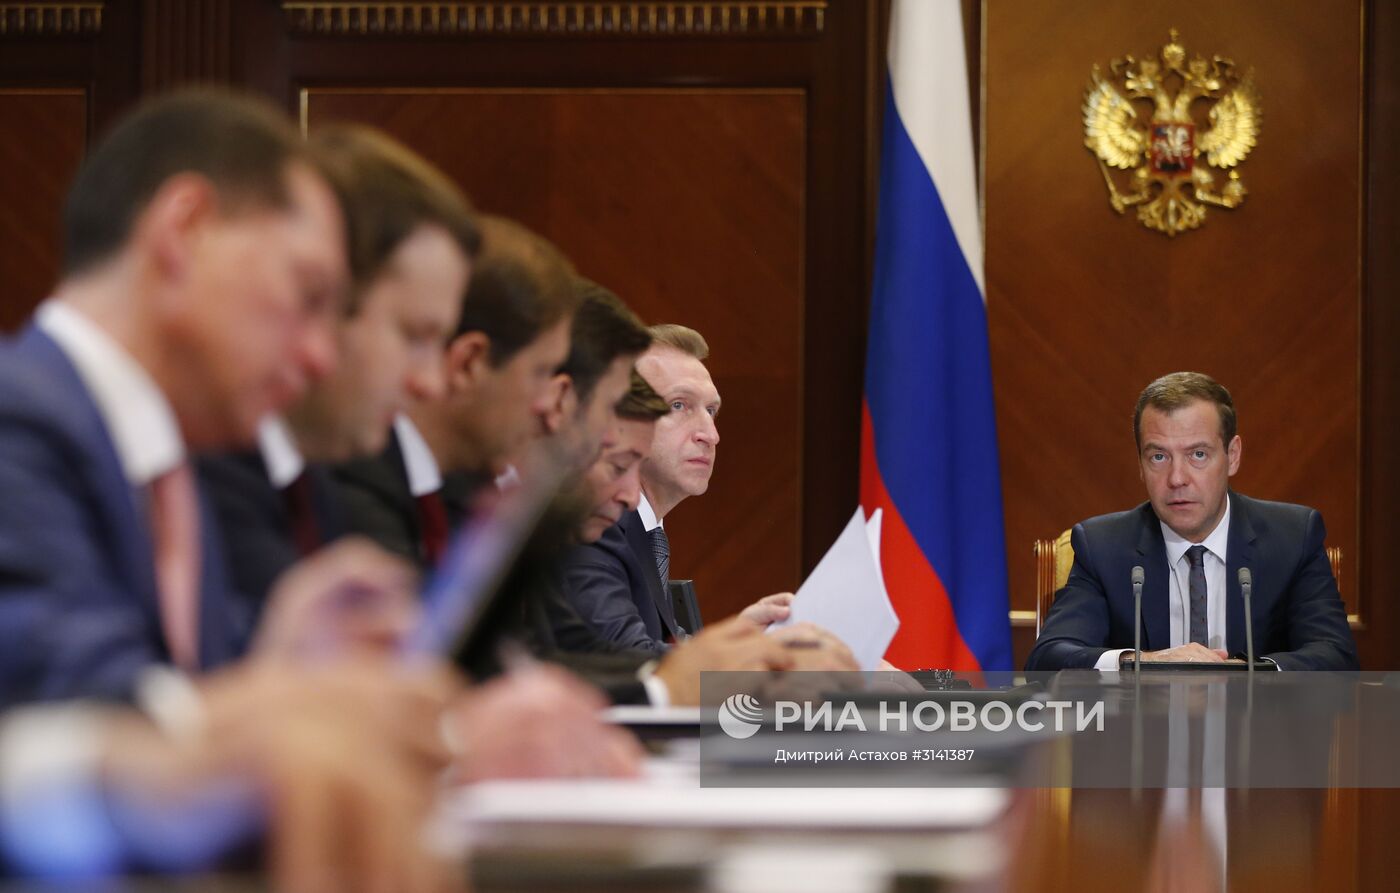 Премьер-министр РФ Д. Медведев провел заседание по стратегическому развитию и приоритетным проектам